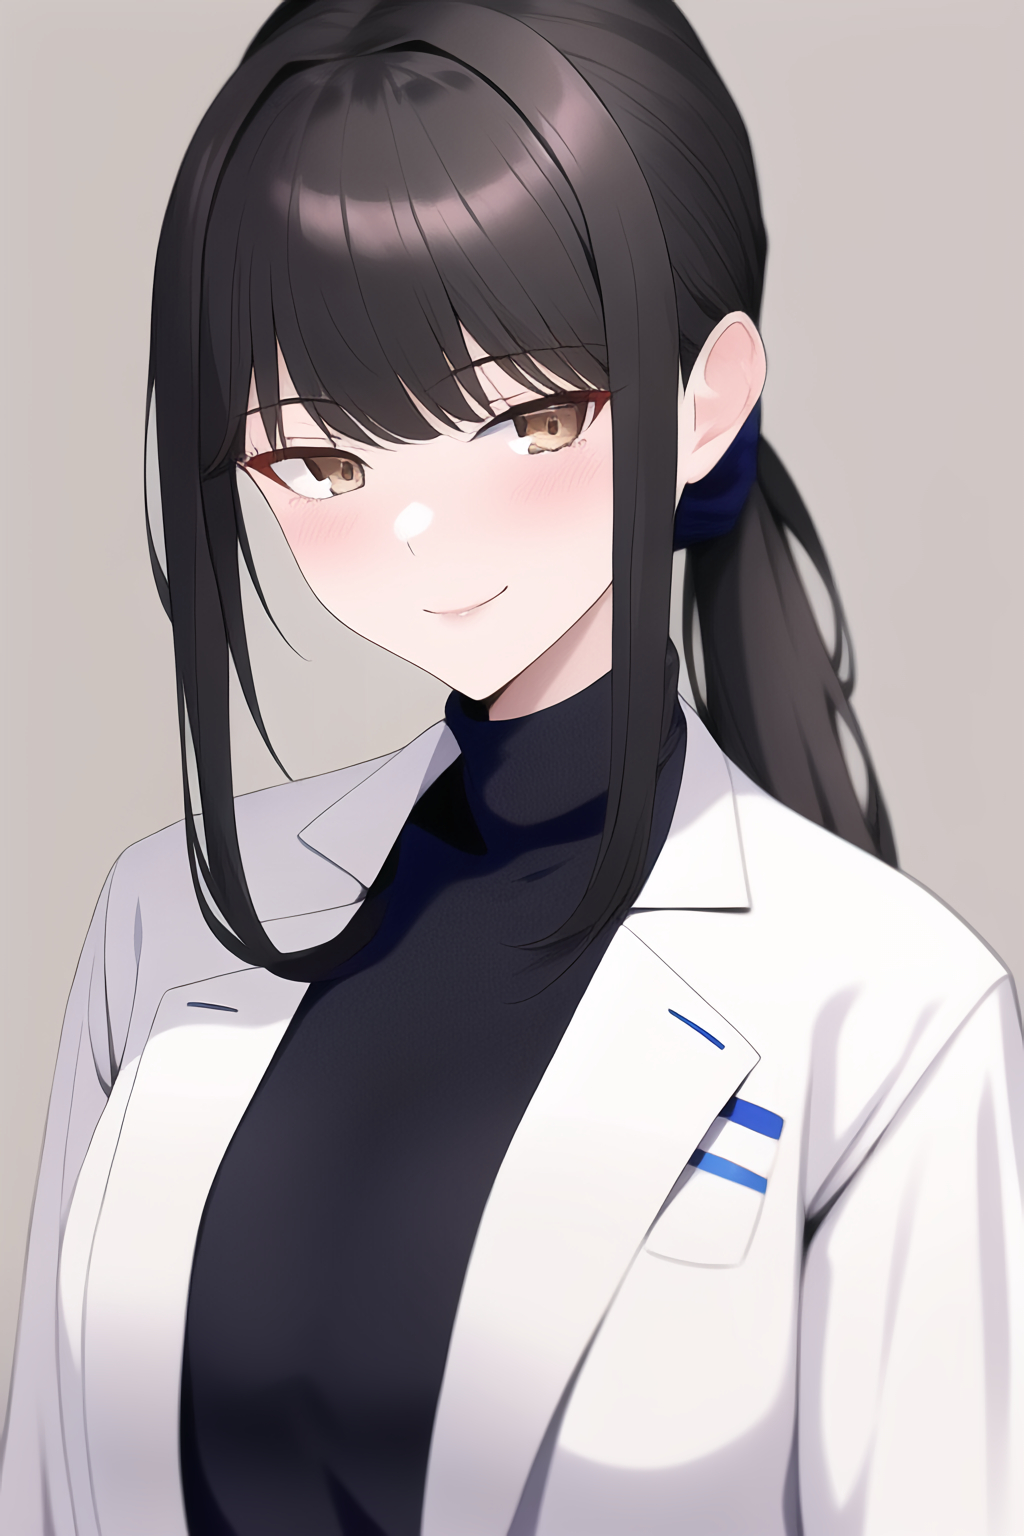 Anime Girls Black Hair Ponytail Brown Eyes Smiling White Coat Turtlenecks  Ai Wallpaper - Resolution:1024x1536 - ID:1352840 